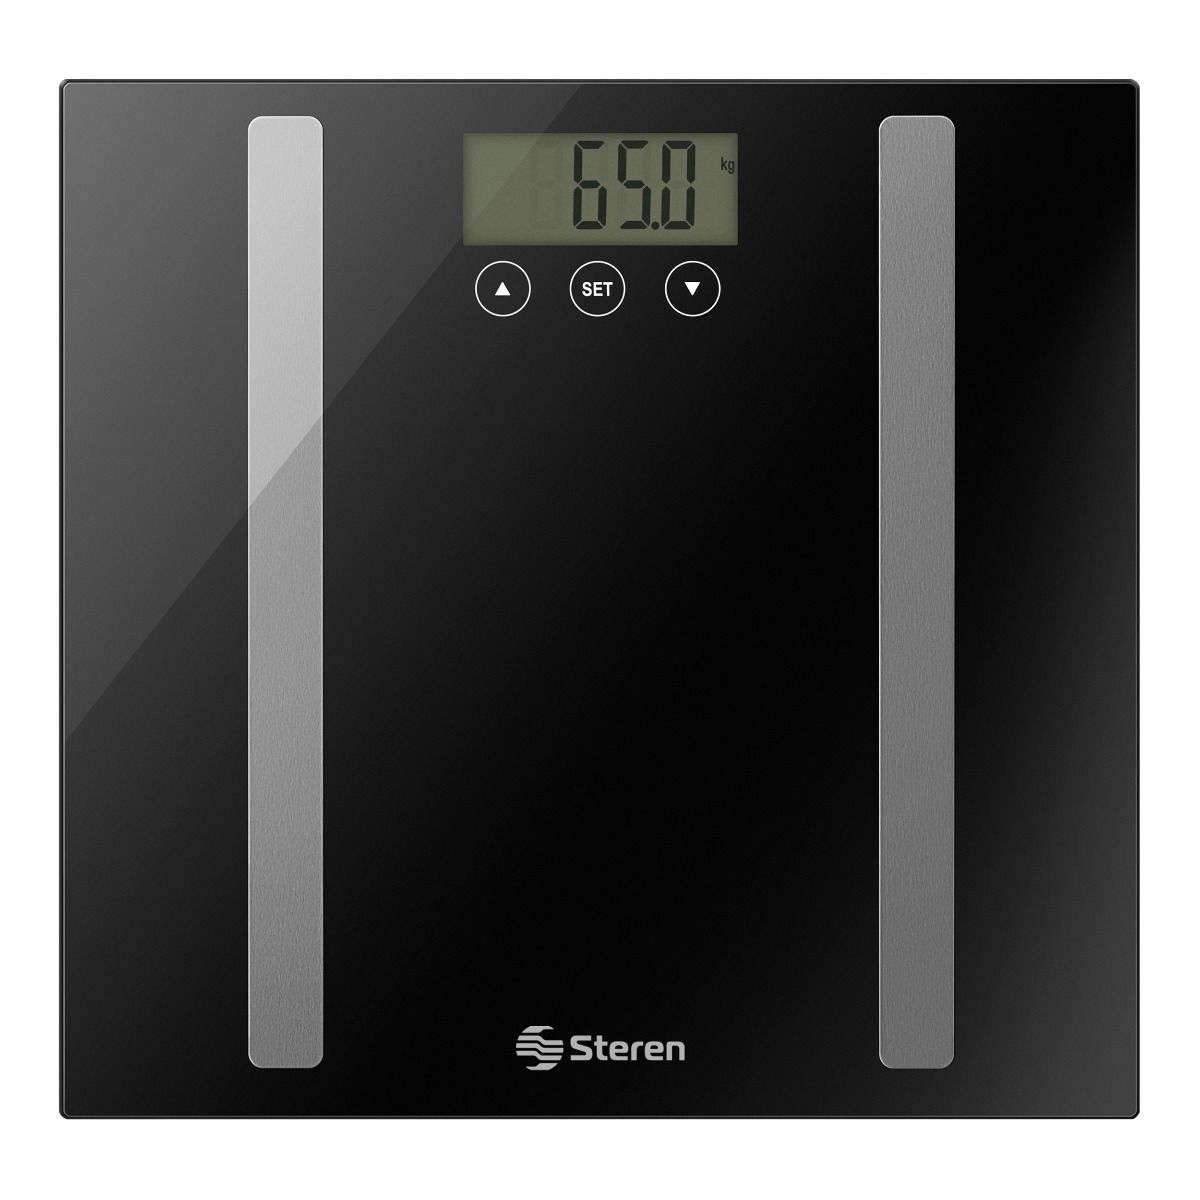 Bascula digital de peso y grasa corporal